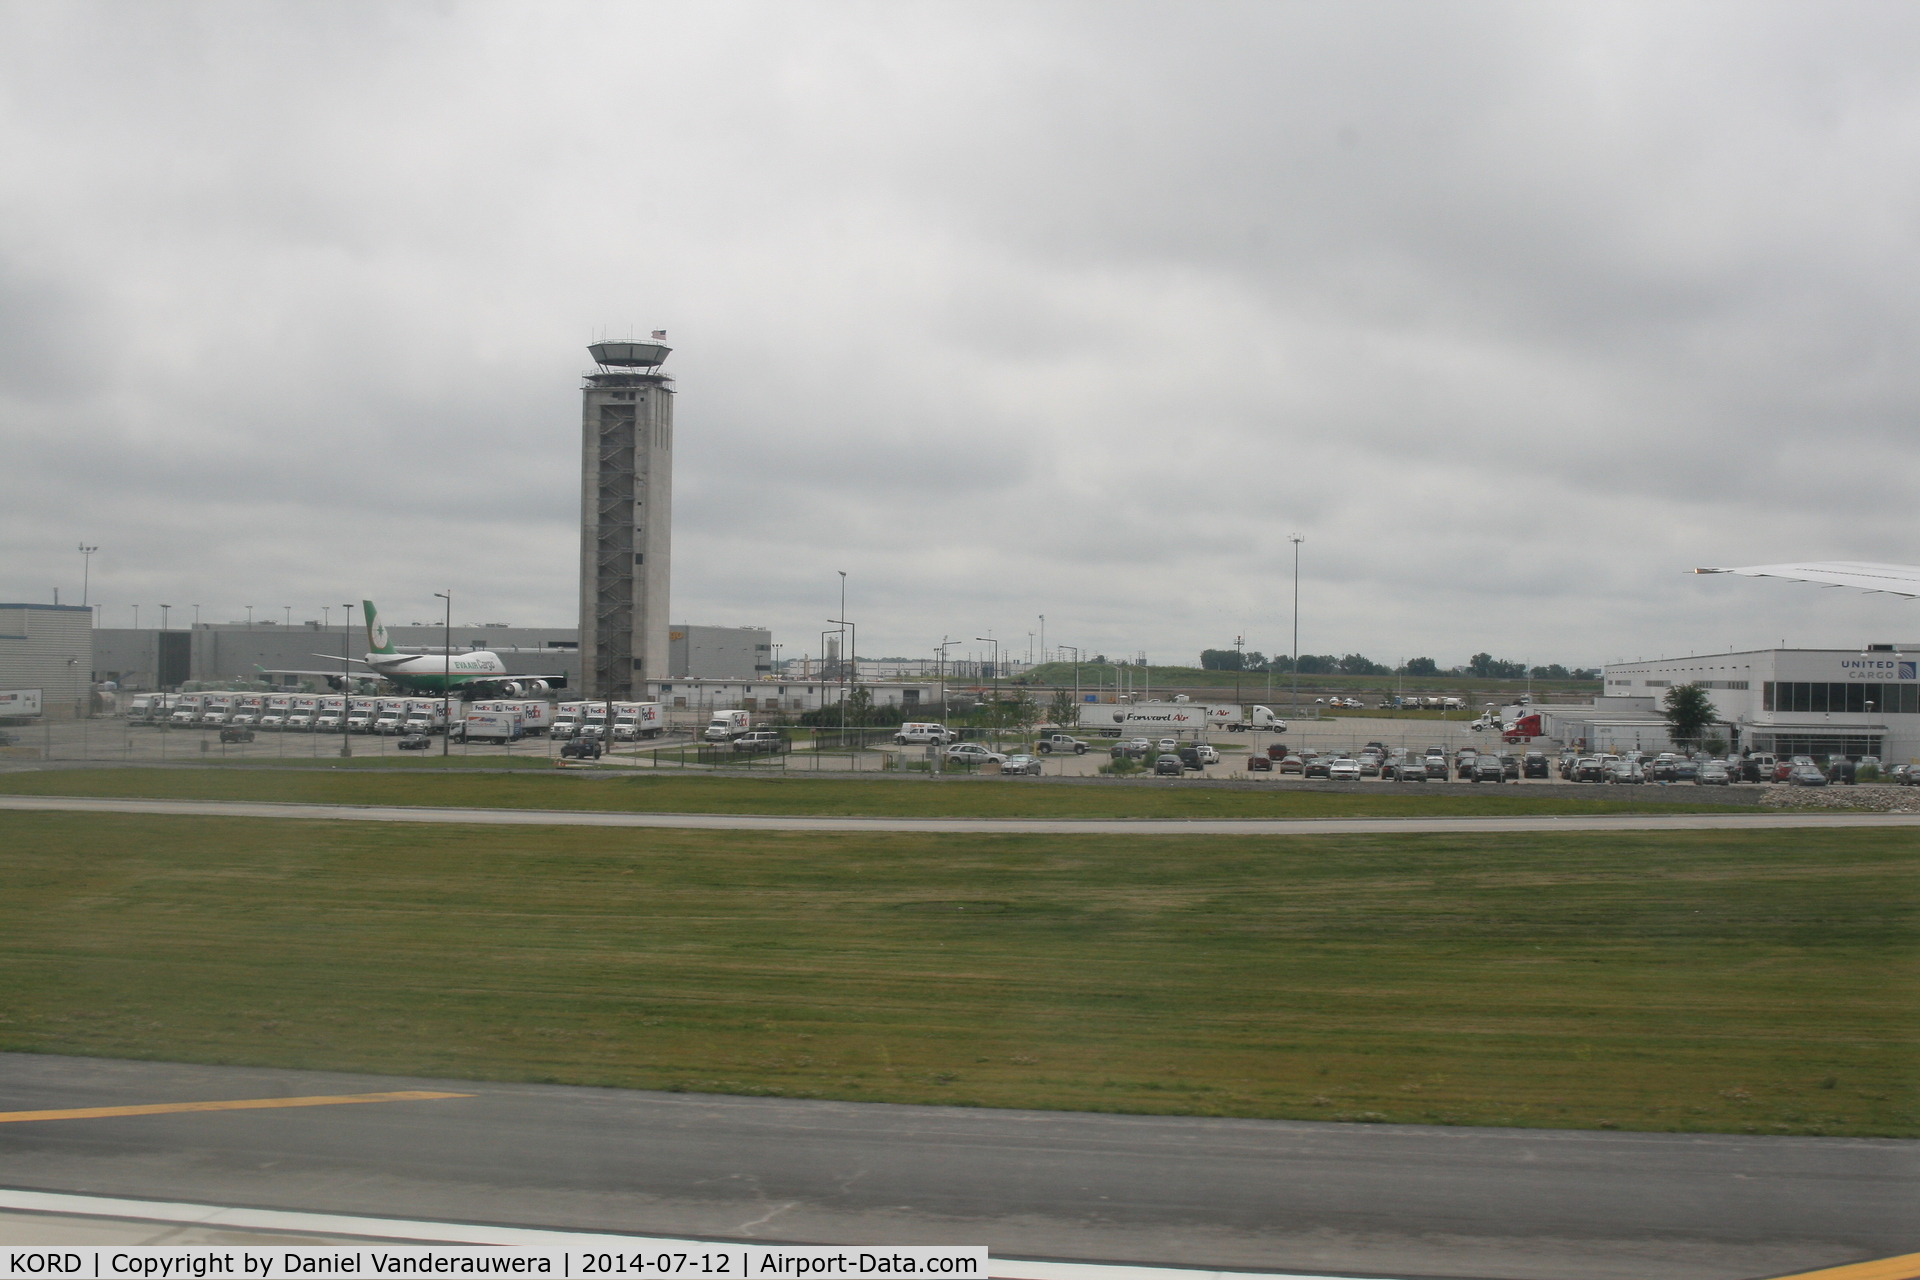 Chicago O'hare International Airport (ORD) - EVA AIR cargo